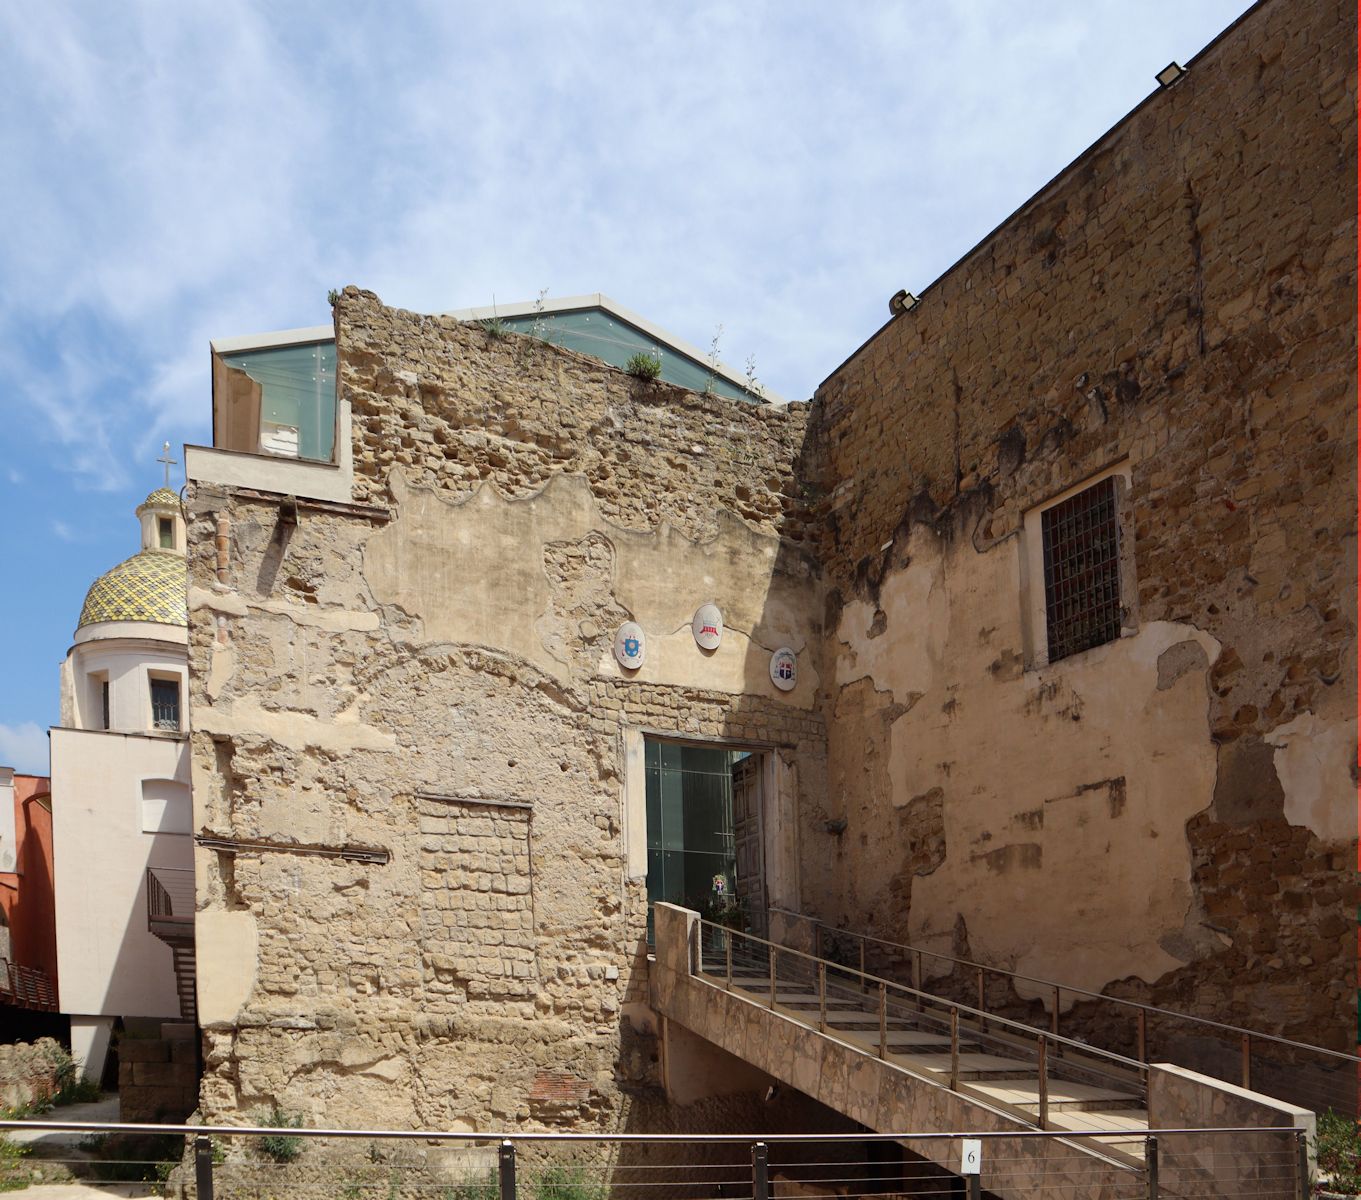 Eingang zur wieder hergestellten Kathedrale in Pozzuoli